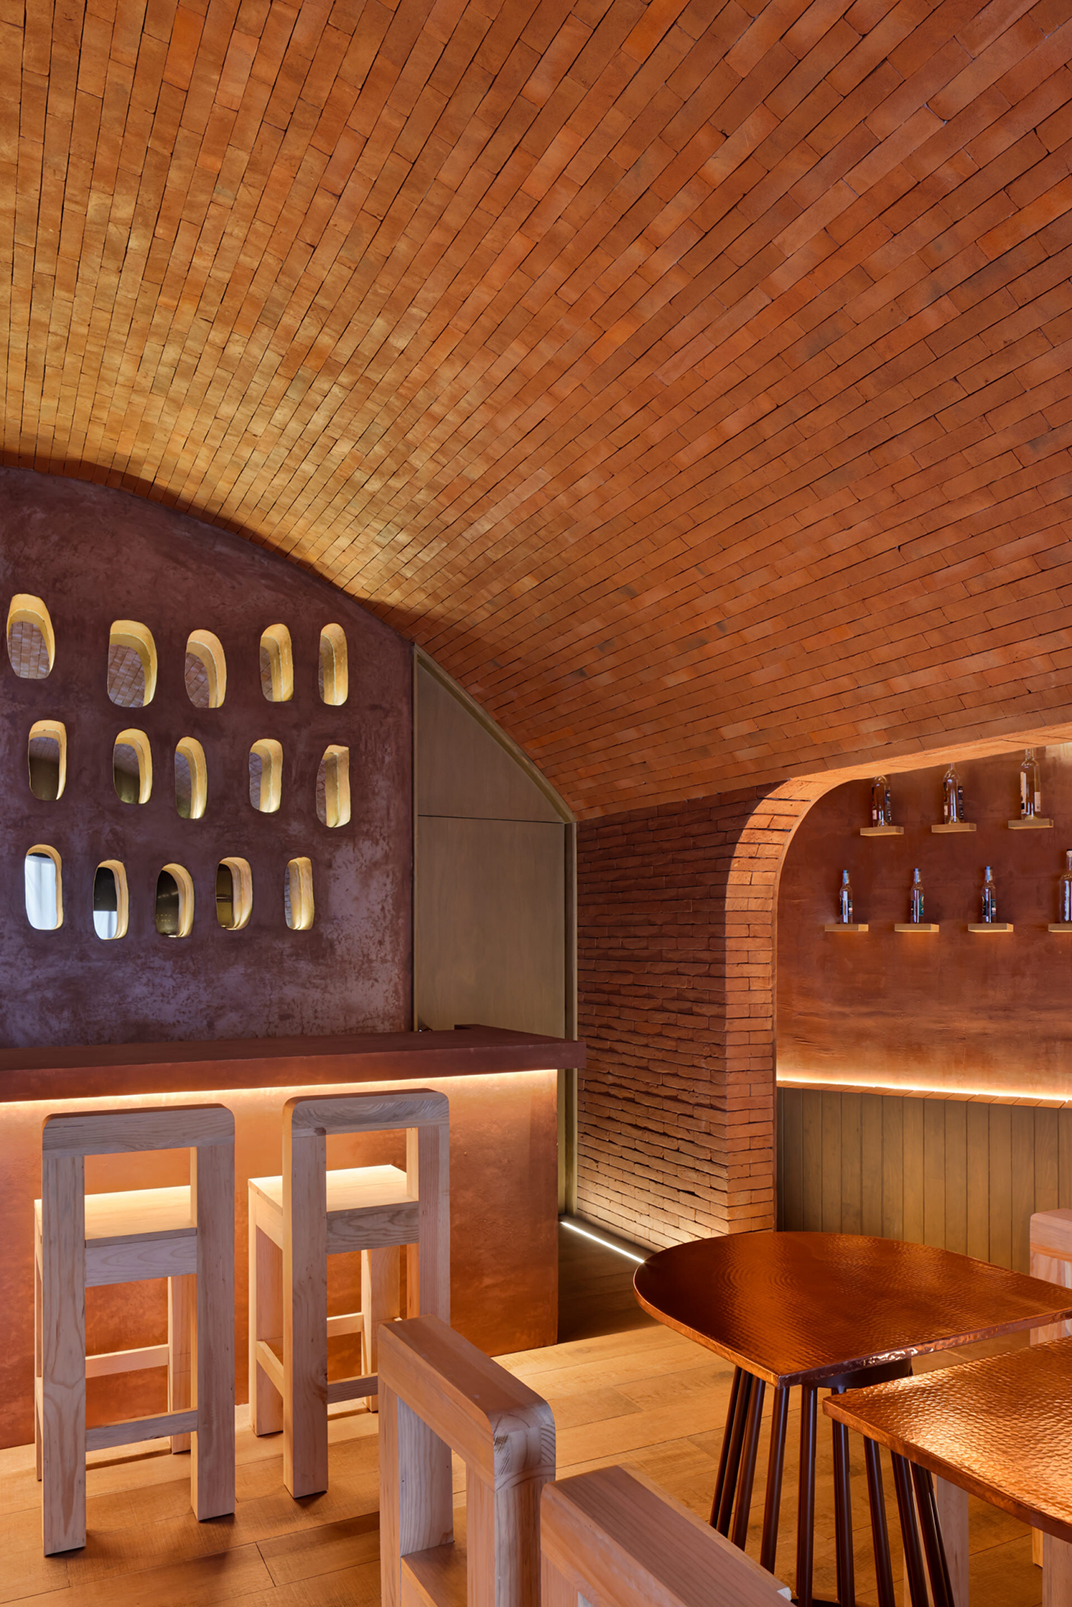  建筑与设计工作坊酒吧餐厅 墨西哥  北京 上海 珠海 广州 武汉 杭州 佛山 香港 澳门 logo设计 vi设计 空间设计